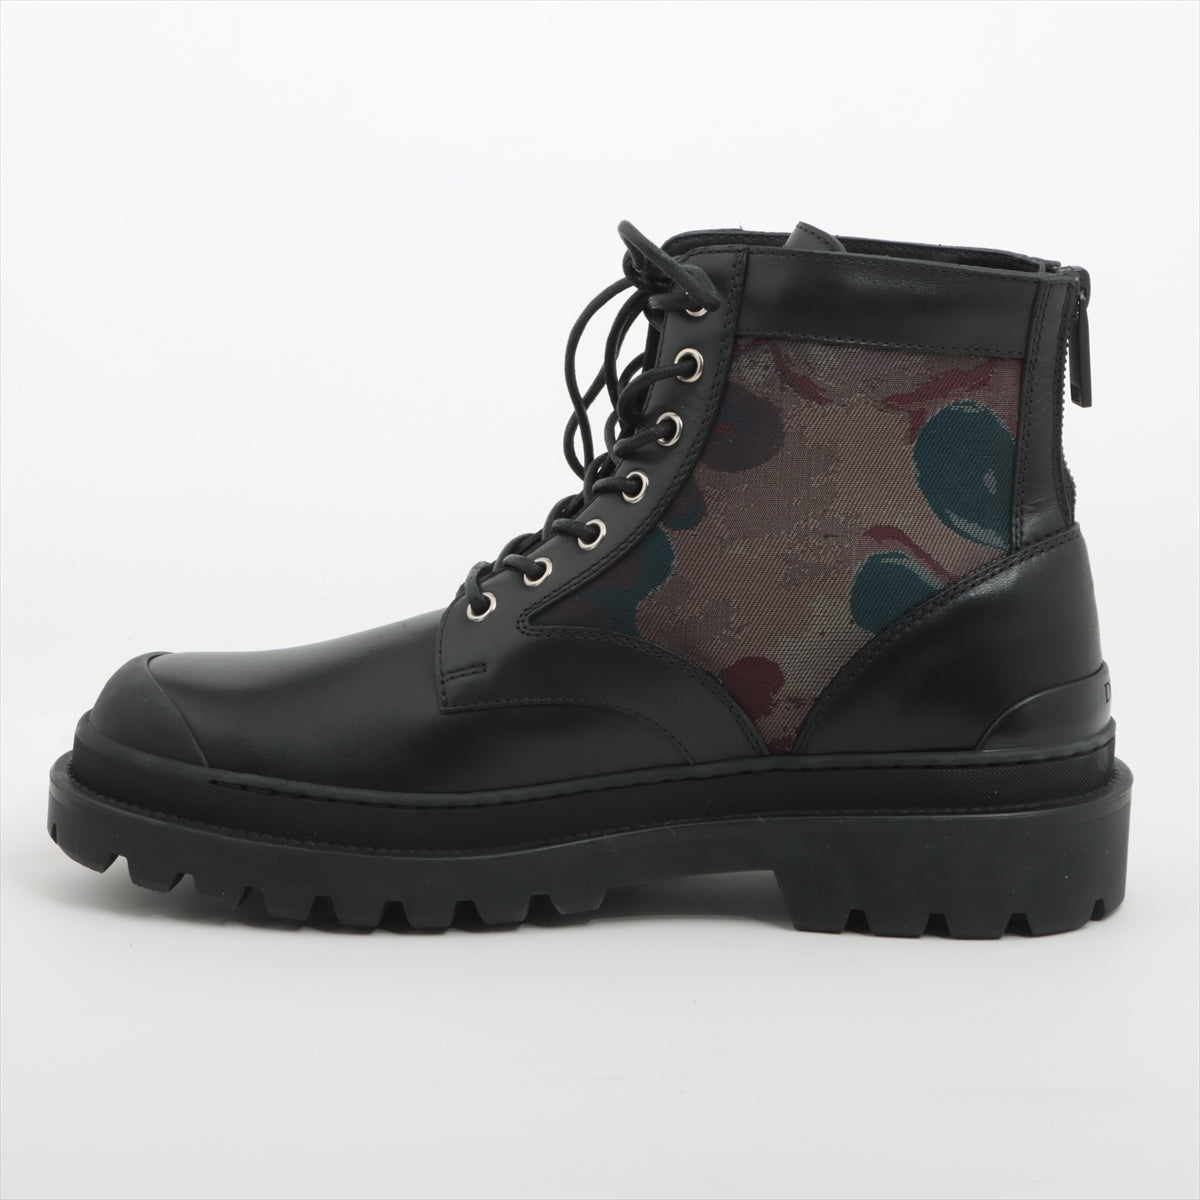 DIOR Leather Short Boots 41 Men's Black EXPLORER PETER DOIG NV0921 Camouflage